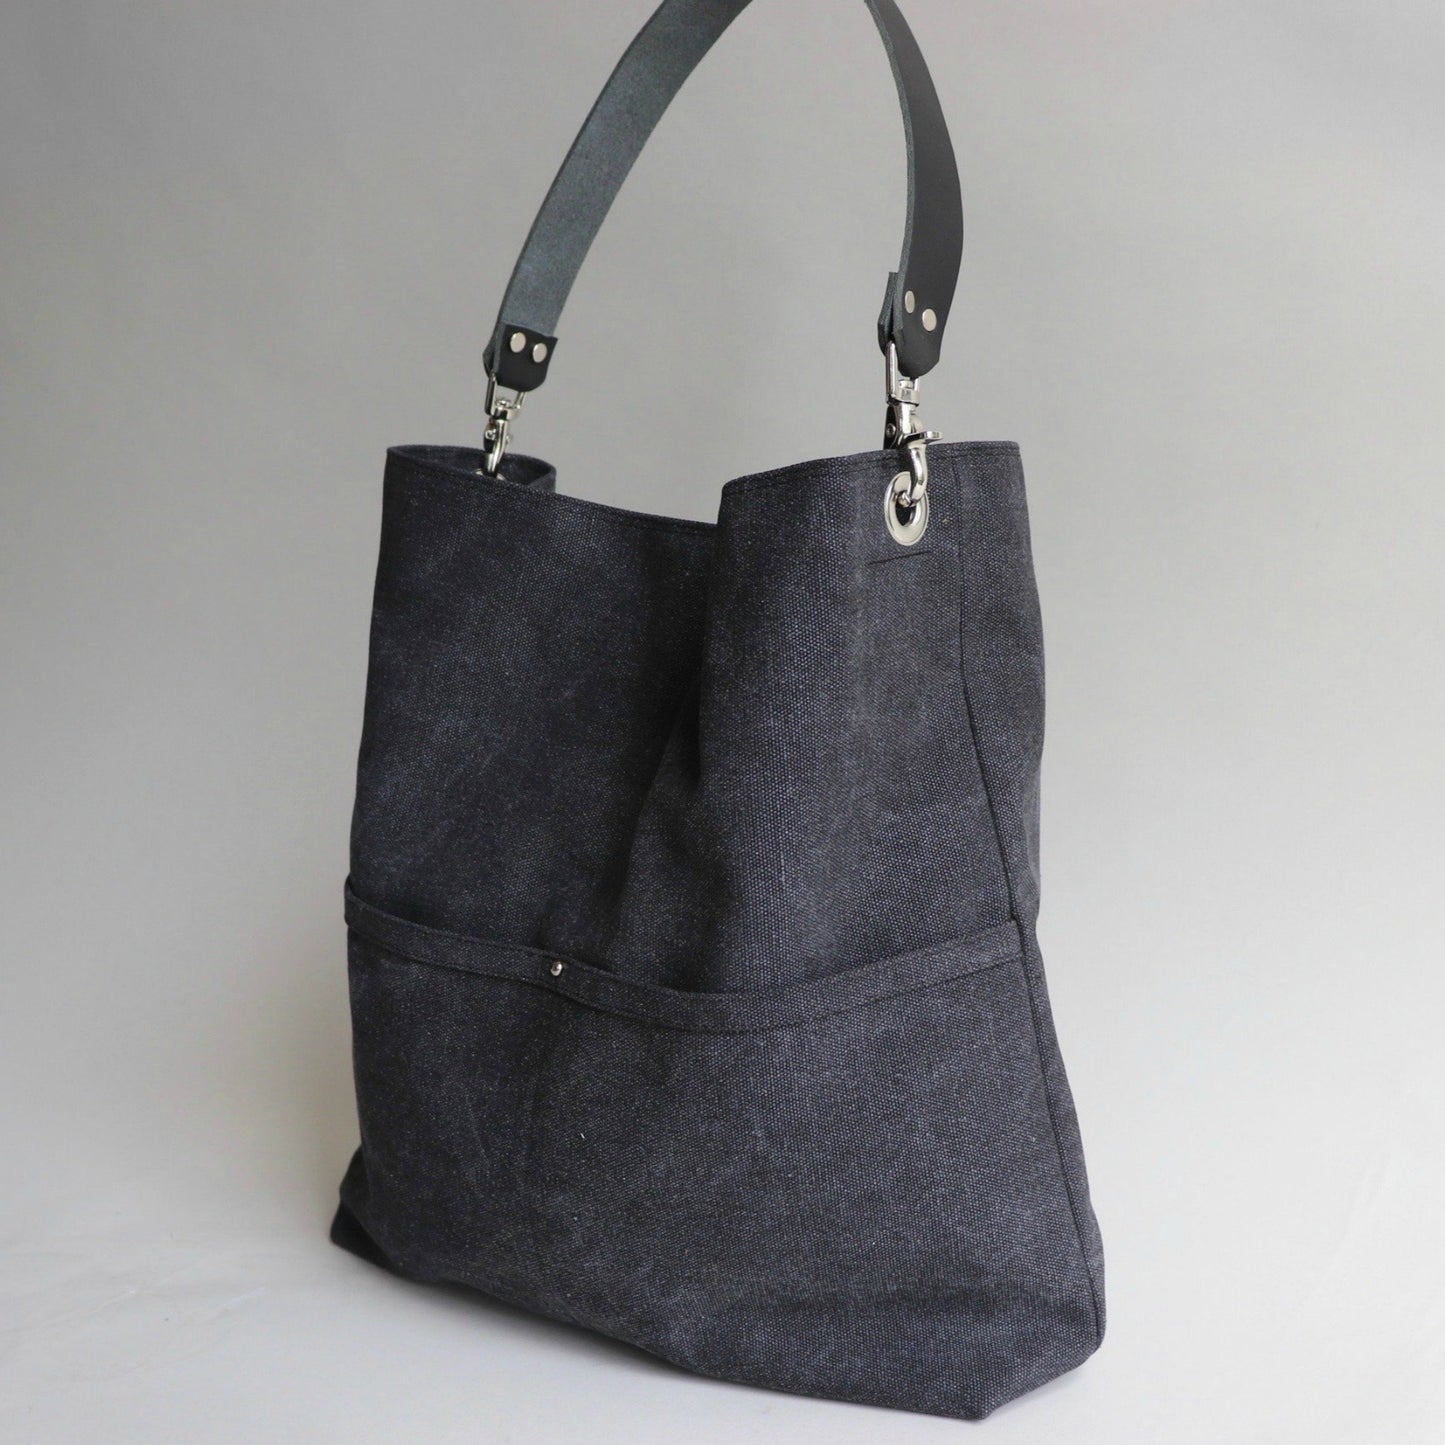 Charcoal Gray Hobo Tote Bag